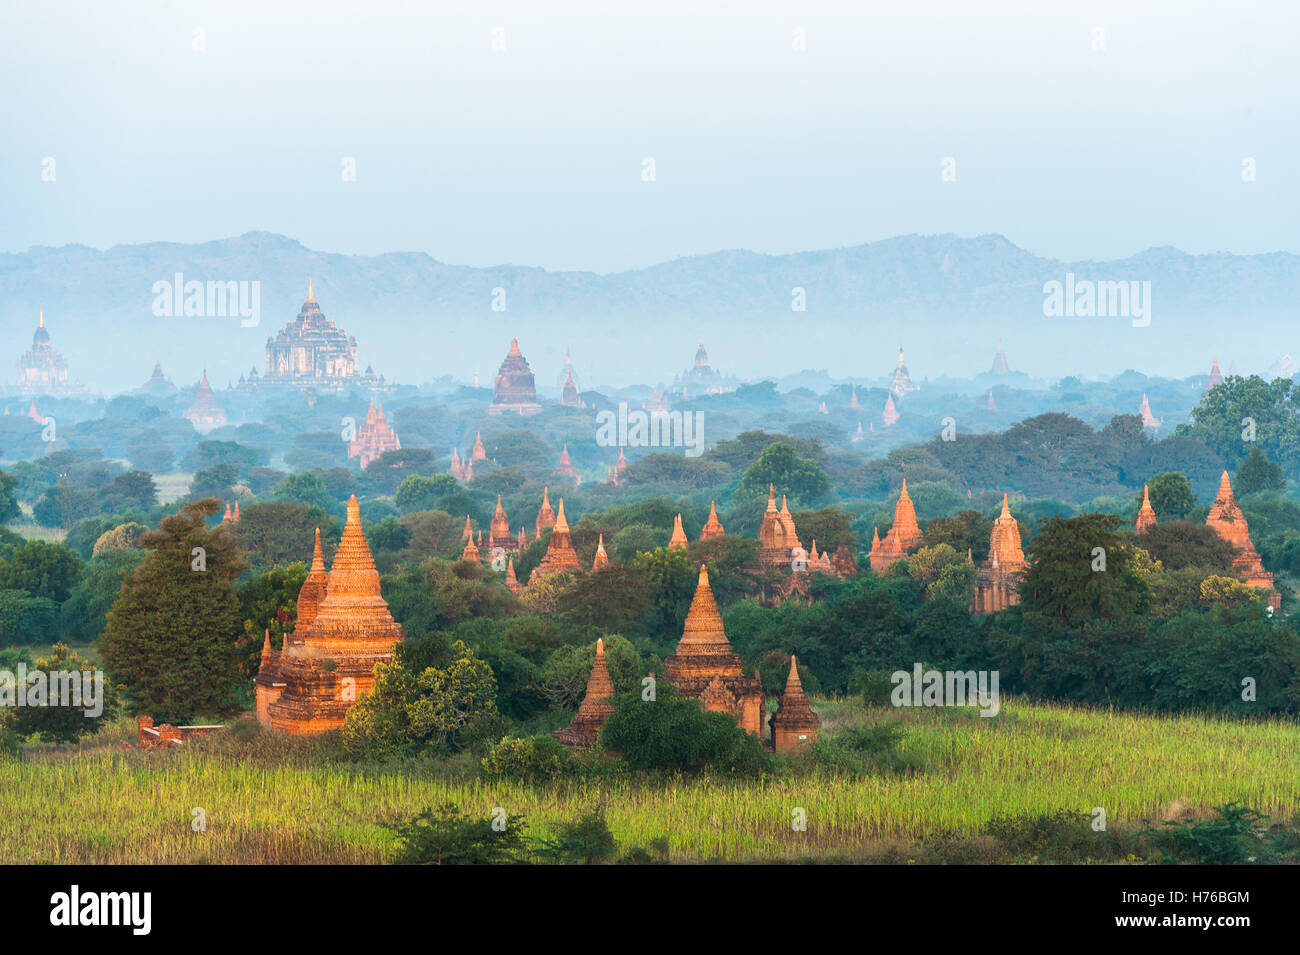 Temples in Bagan, Mandalay, Myanmar Stock Photo